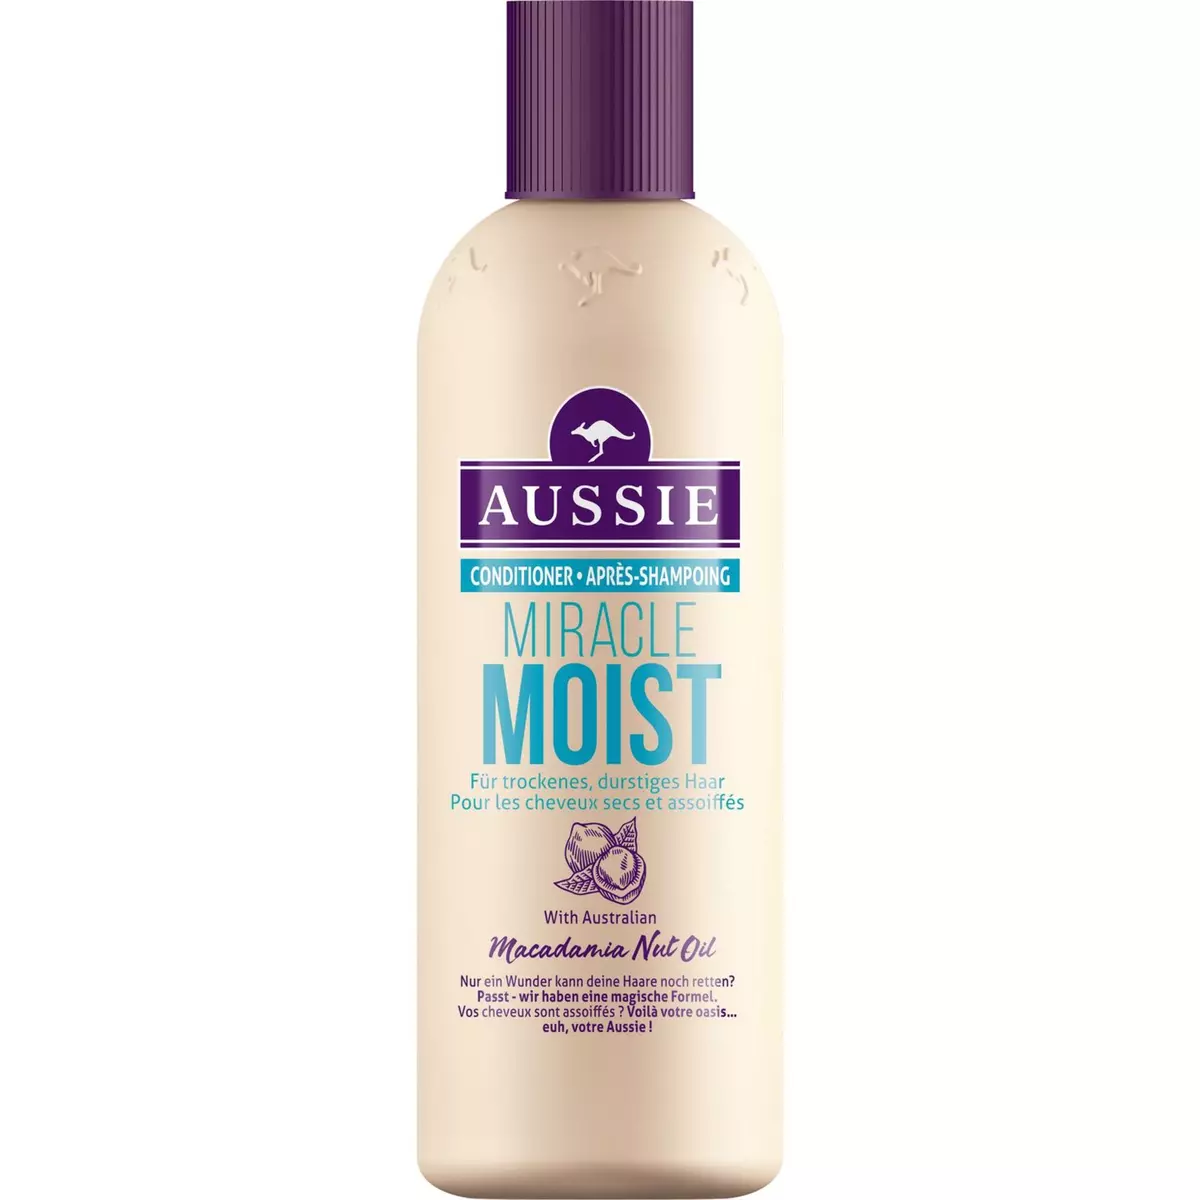 AUSSIE Après-shampooing miracle moist 250ml